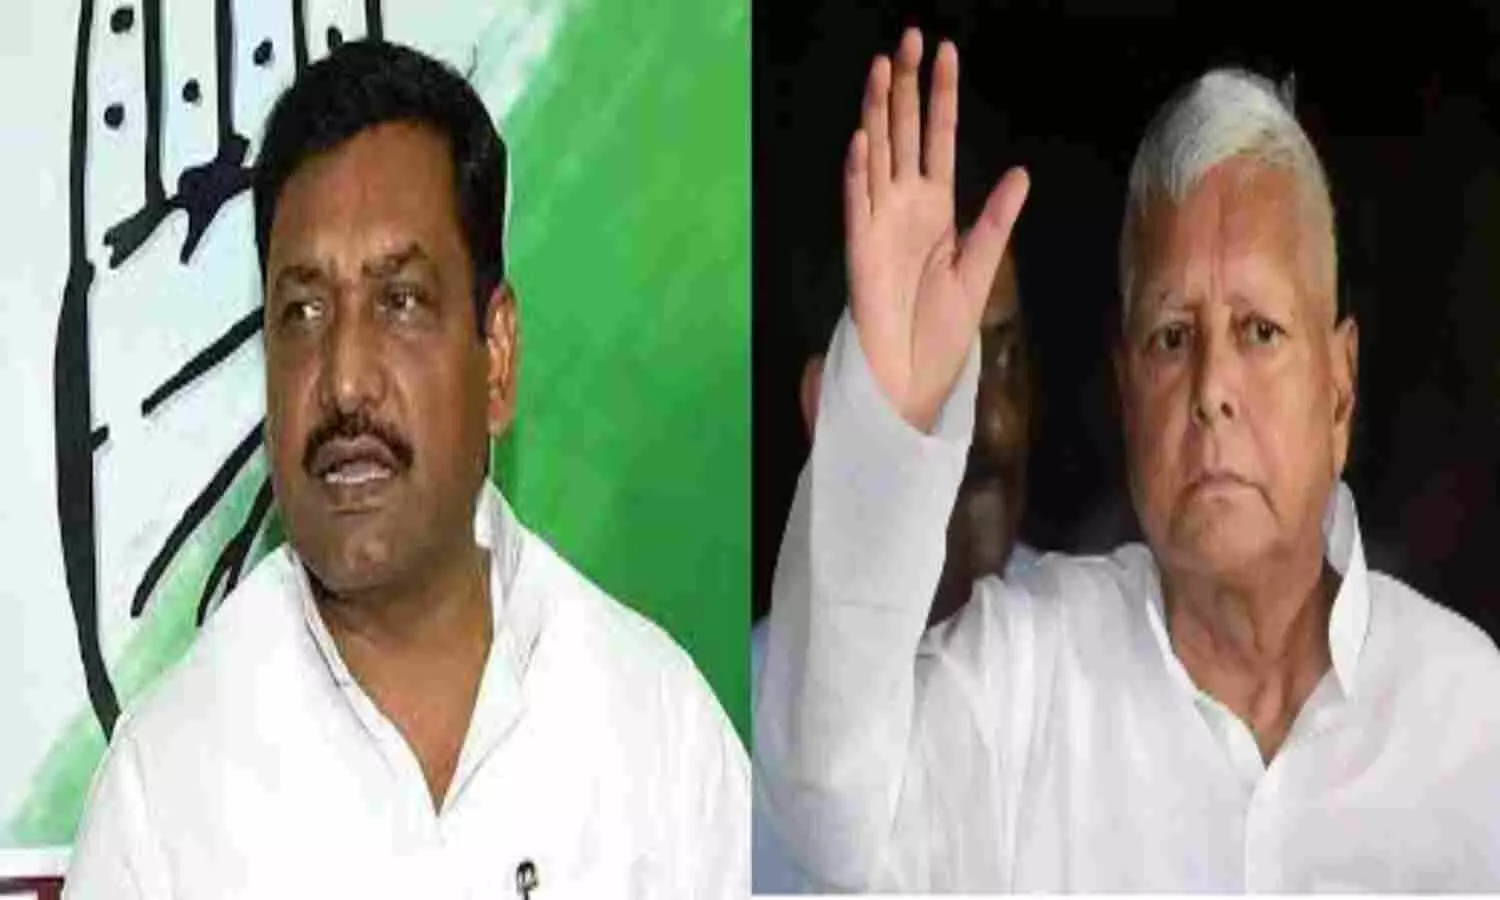 Bihar: बिहार में अब कांग्रेस ने बढ़ाई राजद की मुसीबत, नीतीश के निकलने पर सीटों की डिमांड बढ़ाई, 15 के बाद फैसला होने की उम्मीद